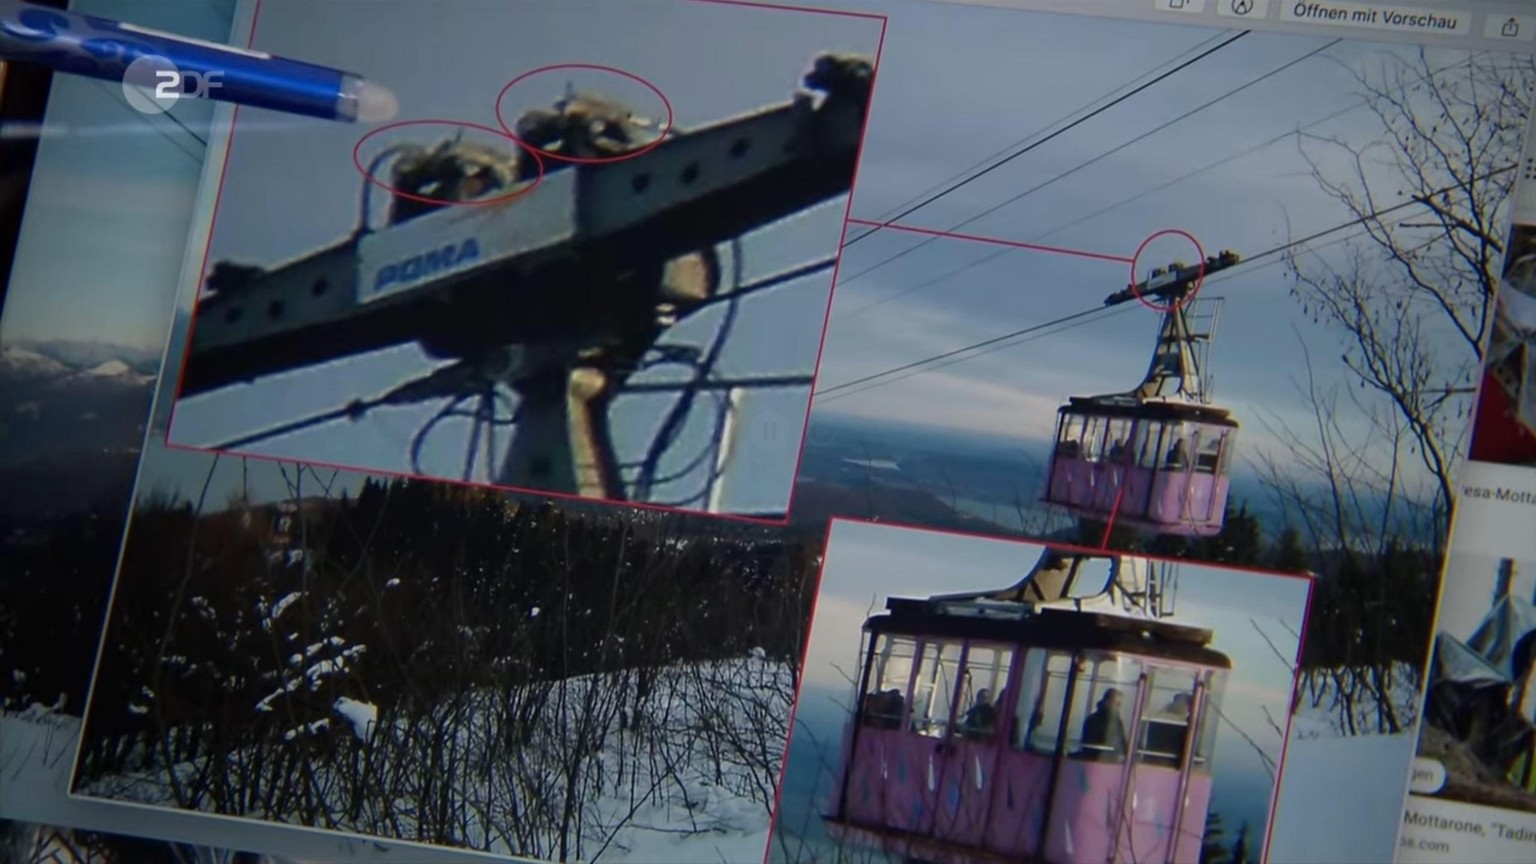 Michael Meiers Bilder legen laut ZDF nahe, dass die Stresa-Seilbahn seit Jahren mit Klammern die Notbremsen blockierte.